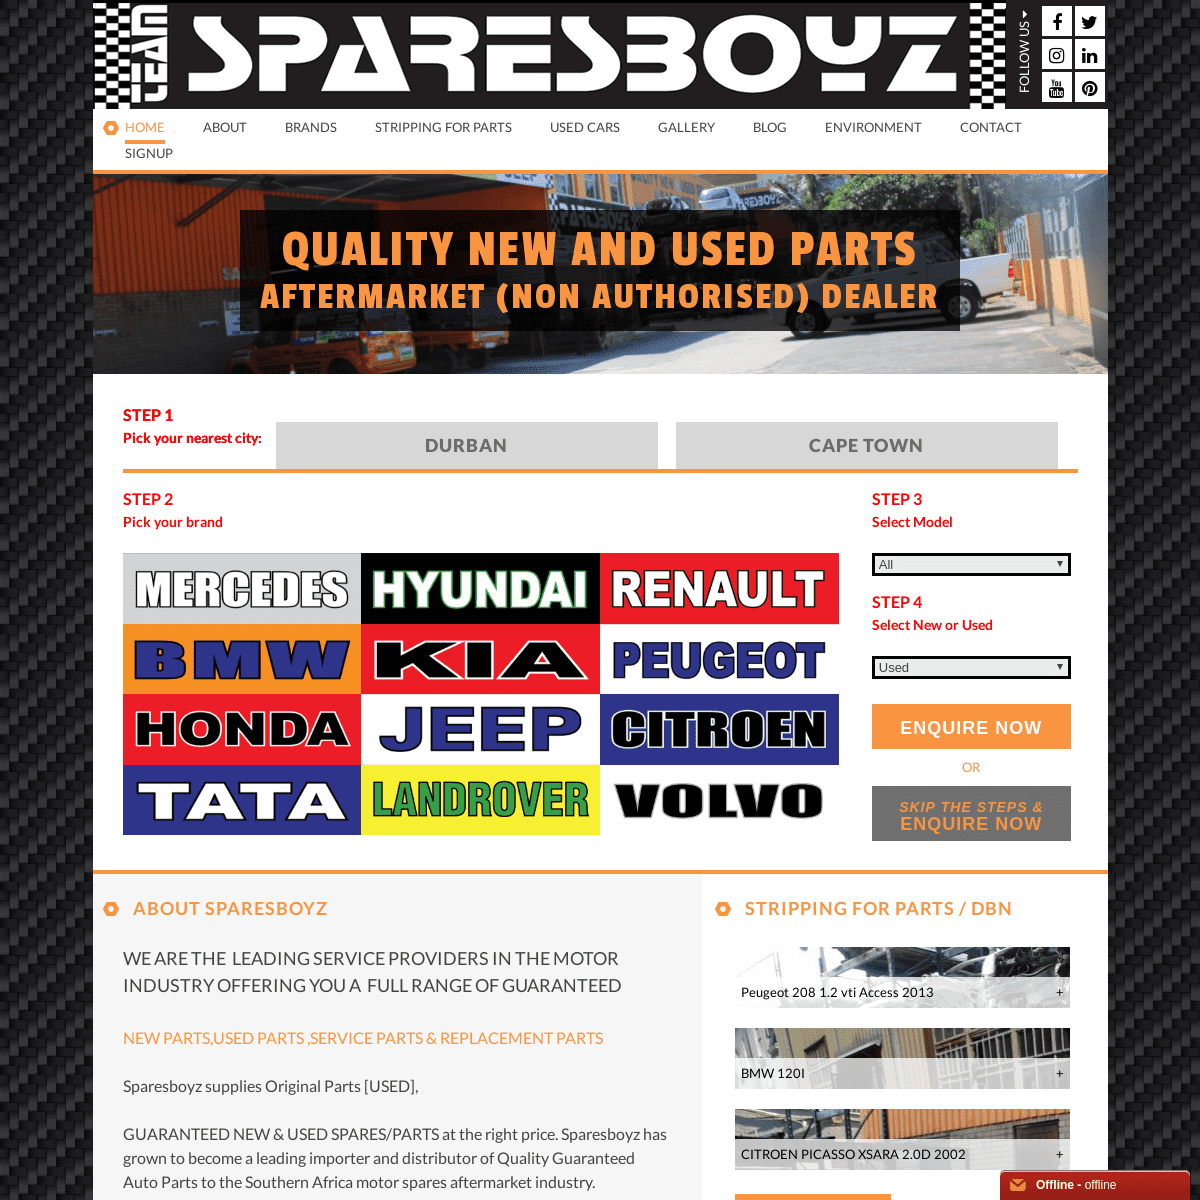 A complete backup of sparesboyz.com